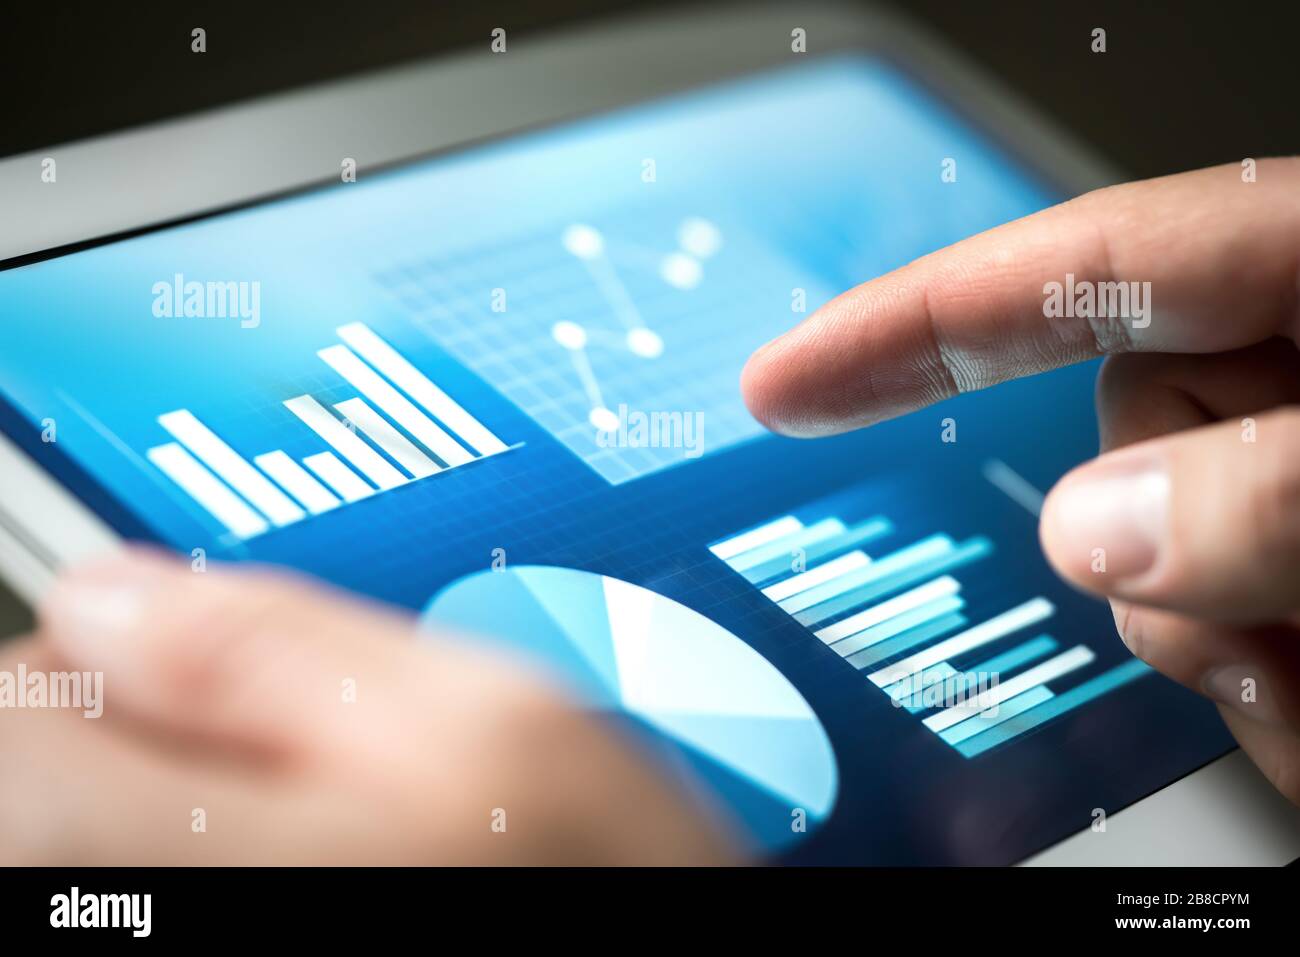 Statistiche, grafici, tendenze e crescita sullo schermo del tablet. Gestione finanziaria e sviluppo con tecnologia nel business. Uomo d'affari che usa il monitor. Foto Stock